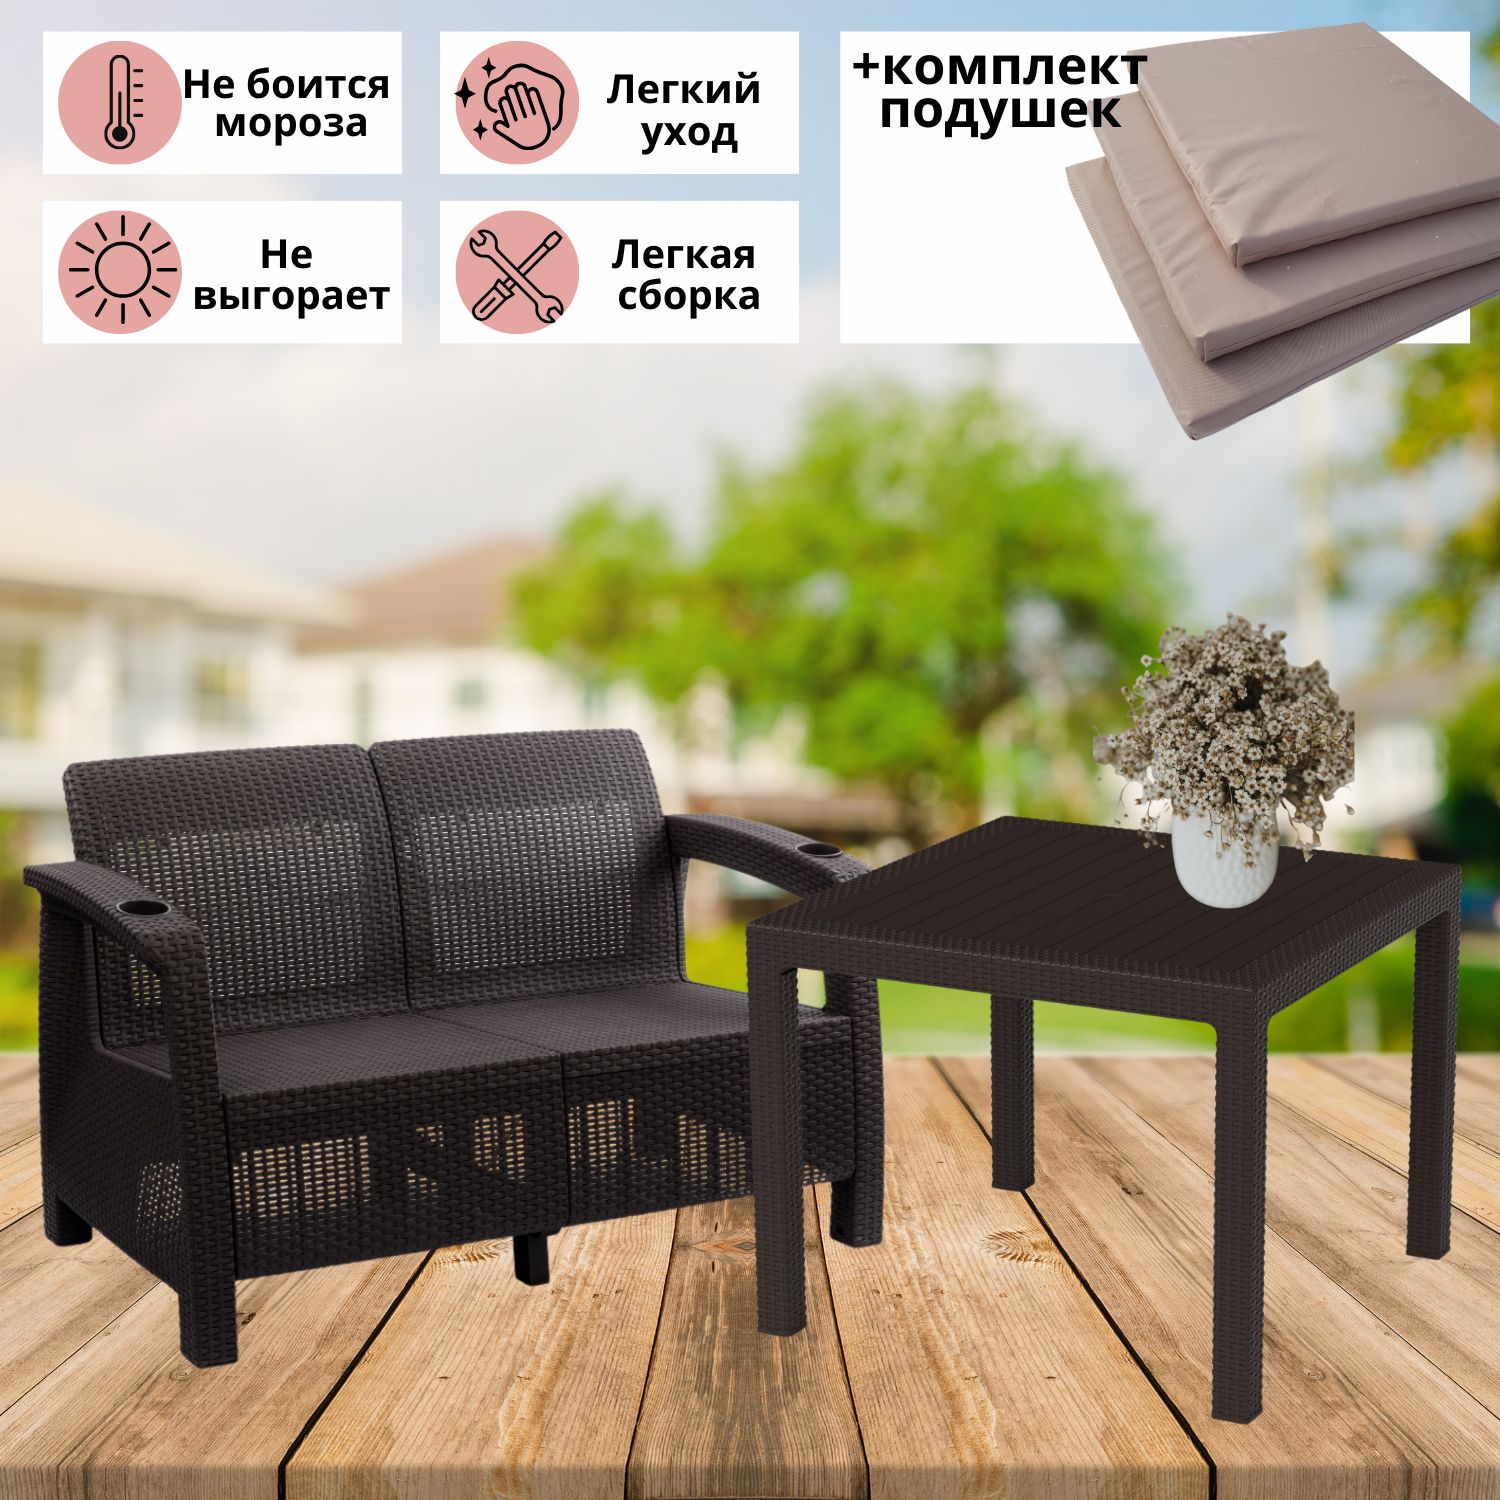 Комплект садовой мебели с подушками Альтернатива Фазенда-2 RT0454 диван и обеденный стол